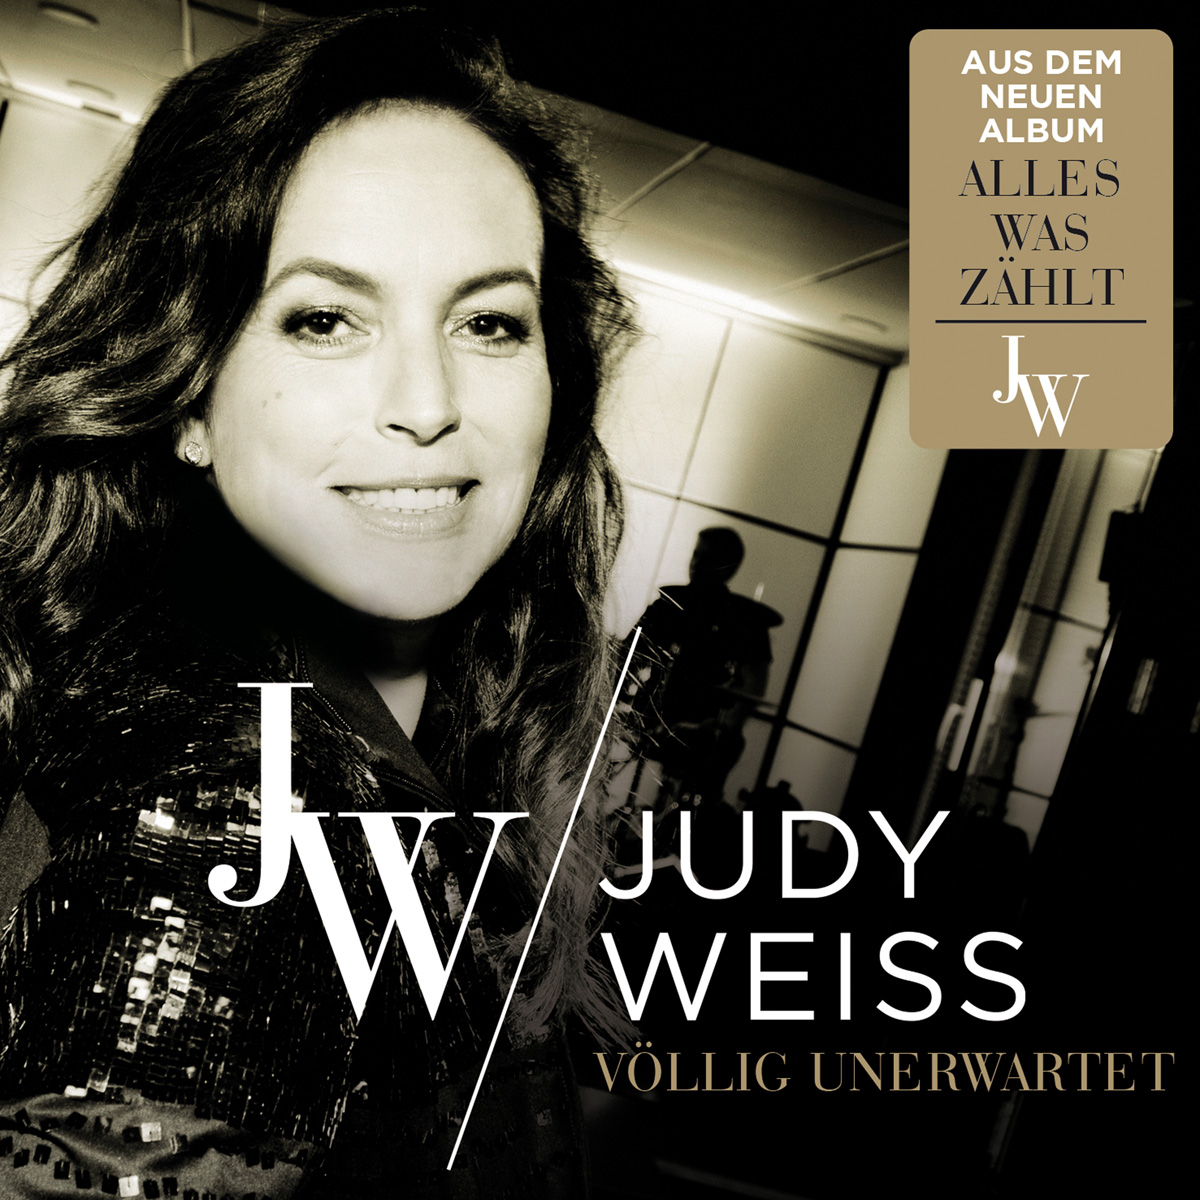 Judy Weiss - Völlig unerwartet